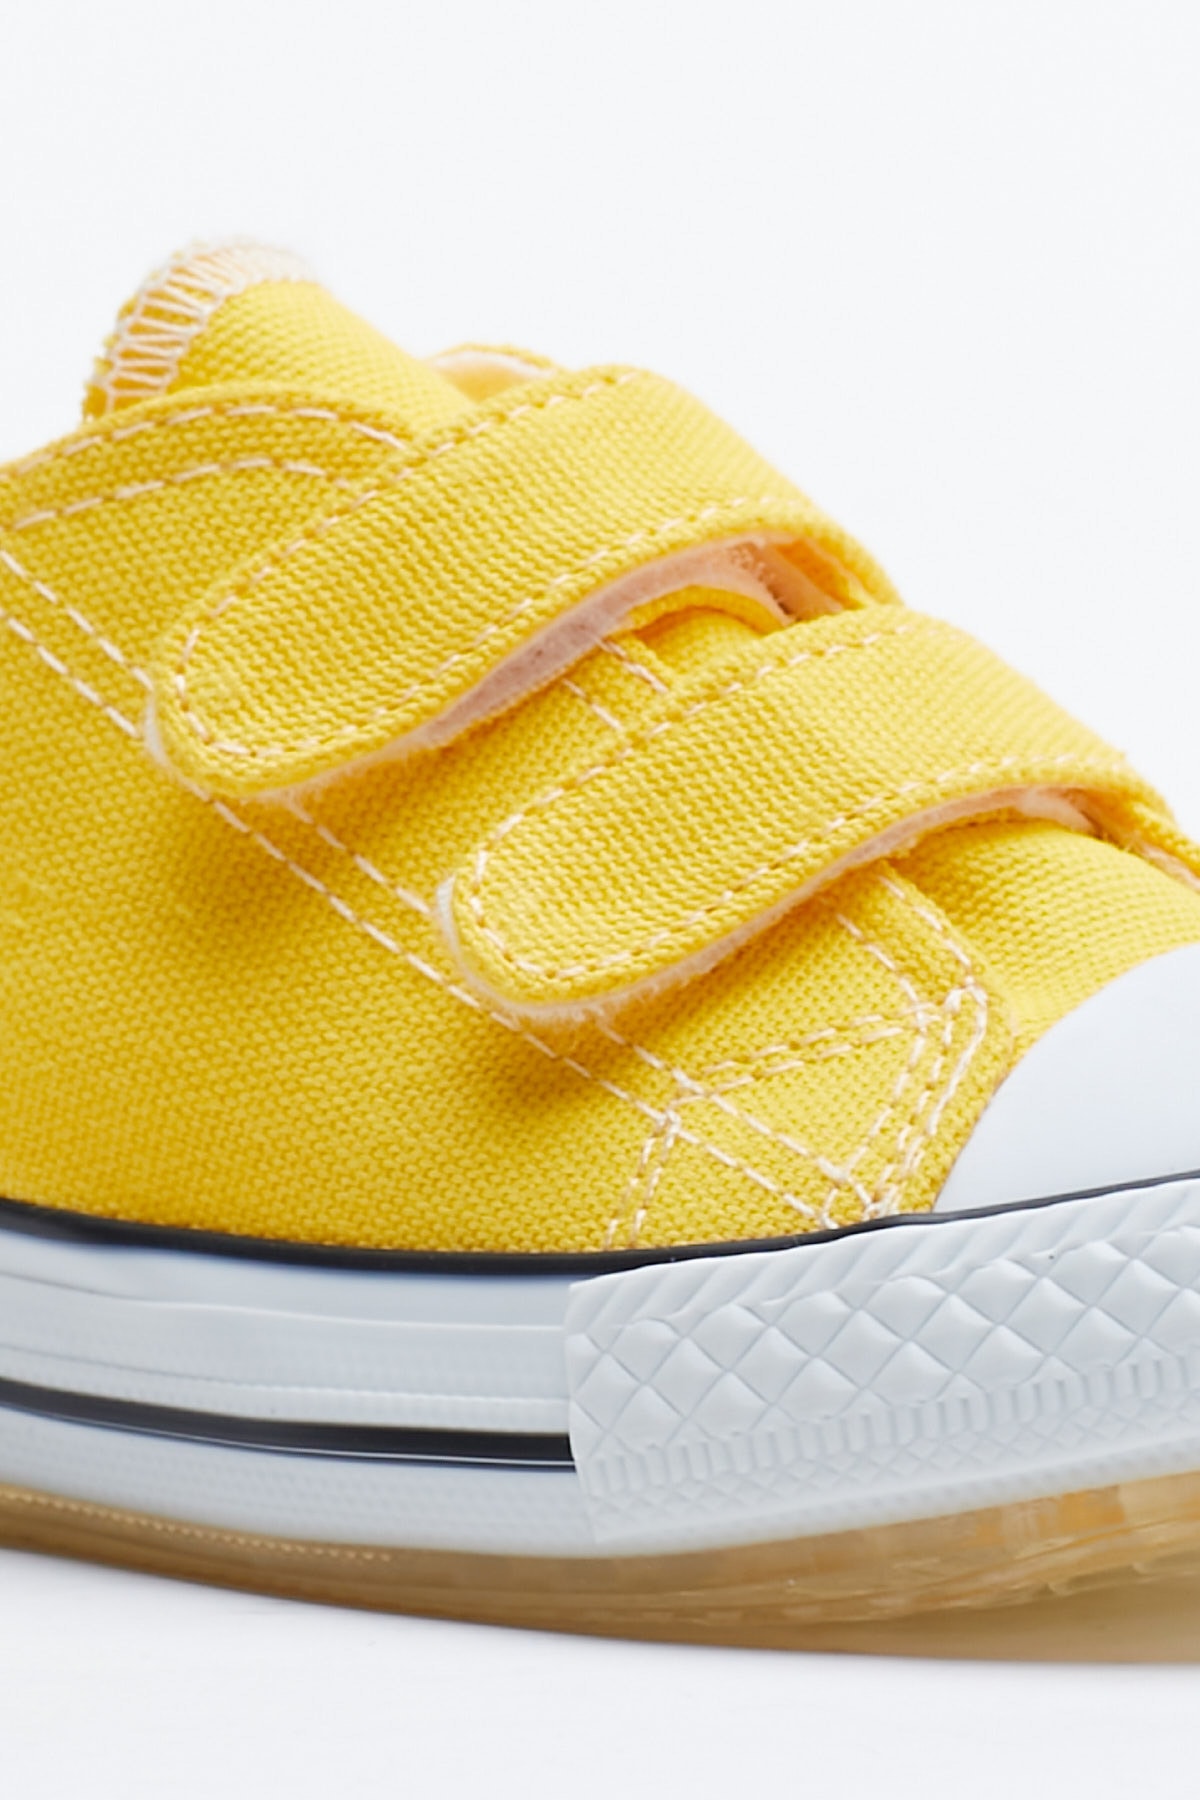 Cocuk Sarı Spor Ayakkabı Işıklı Cırtlı Tb997